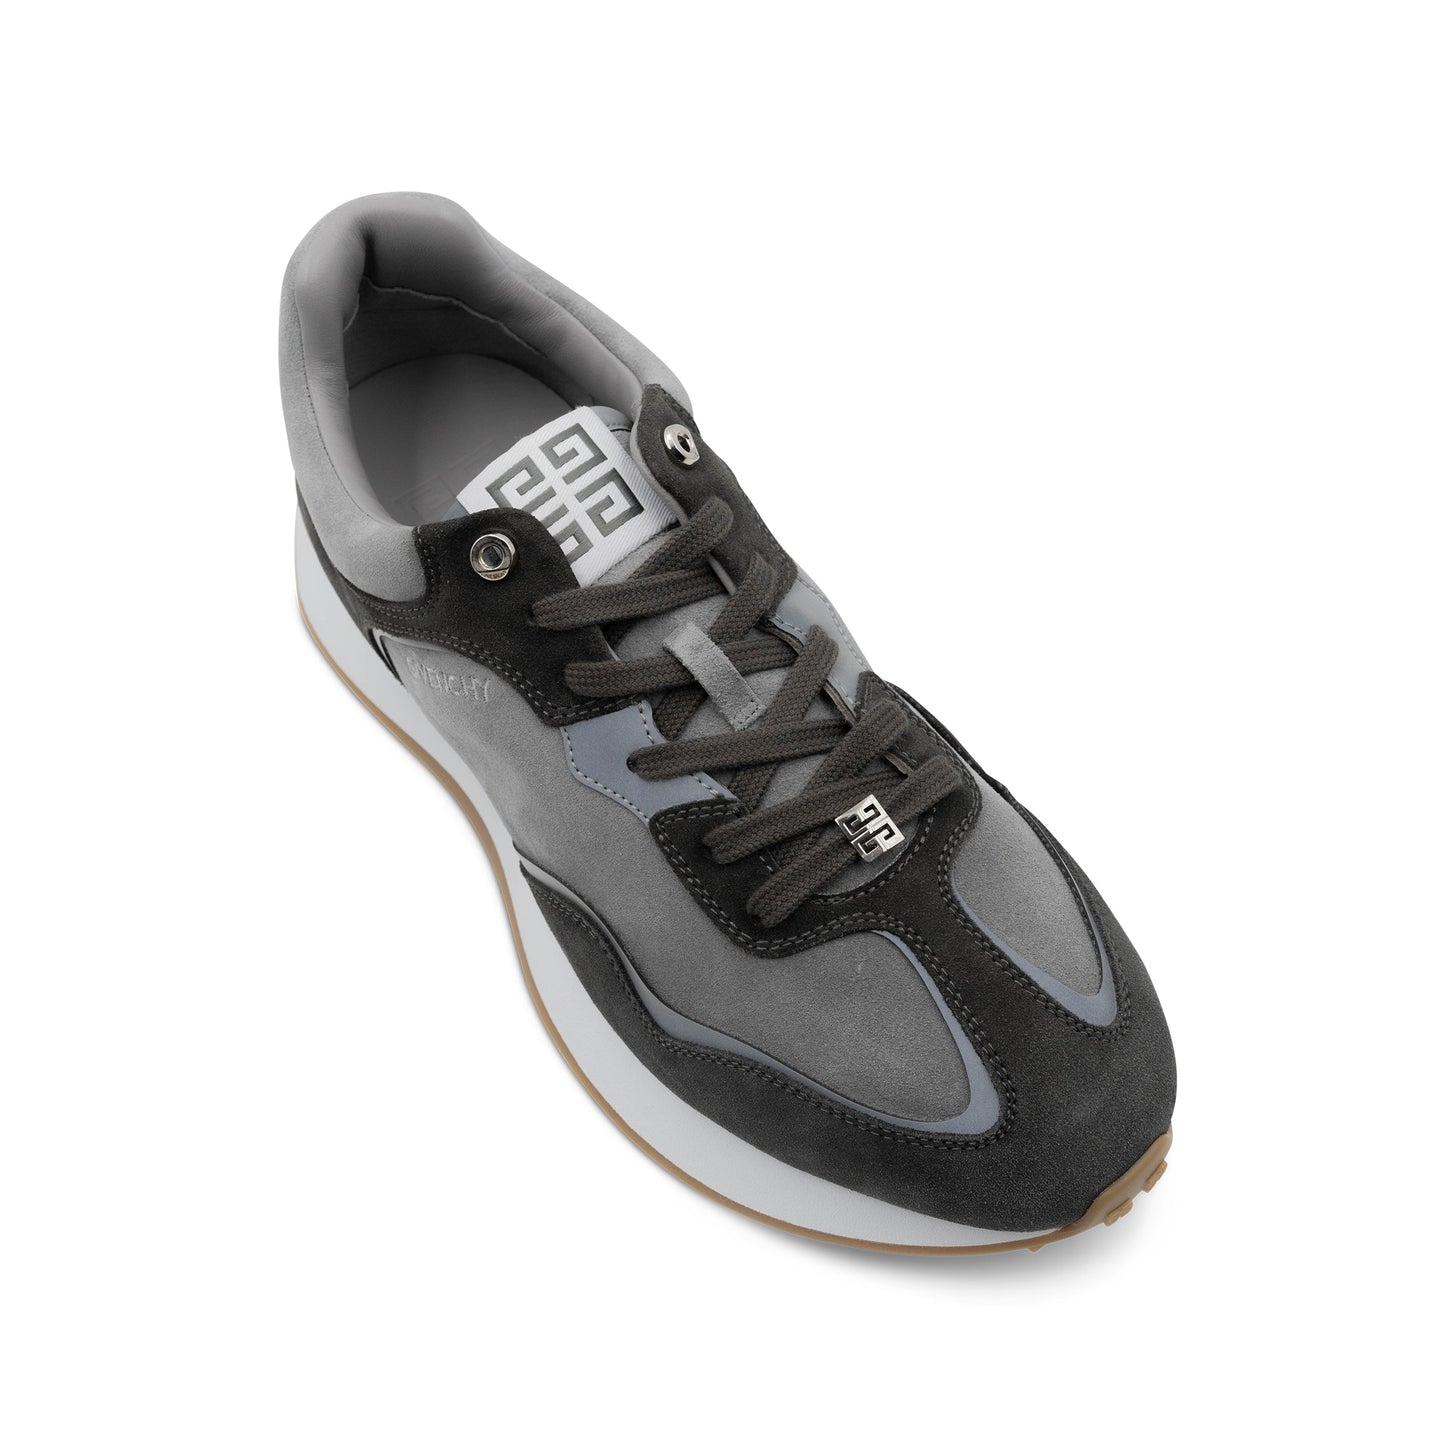 GIV Runner Sneaker in Light Grey